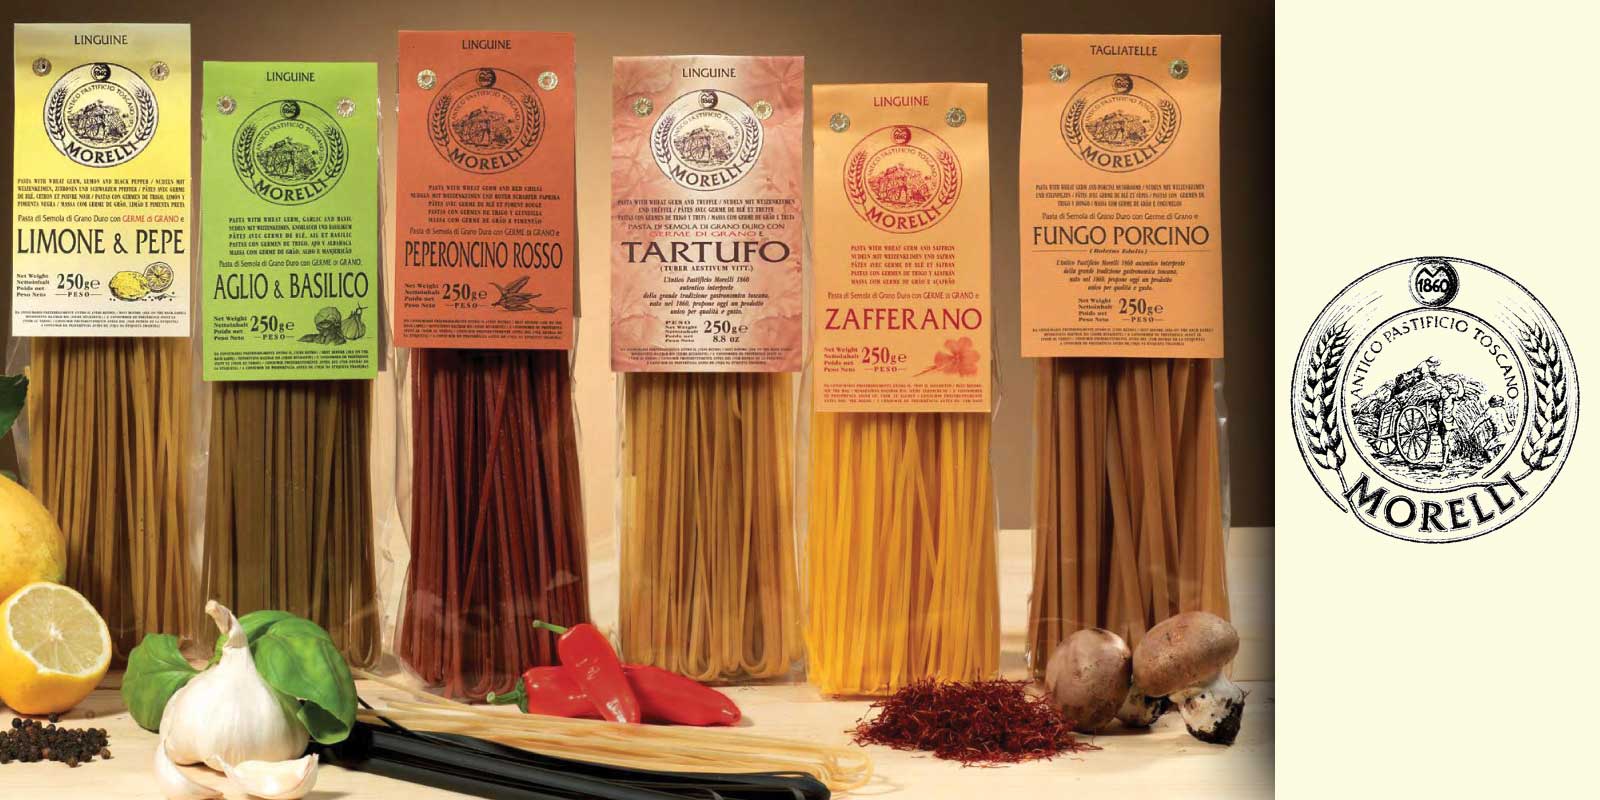 Morelli 1860 - Nudeln / Pasta aus Italien Die Produkte der Antiken Nudelmanufaktur Morelli sind einzigartig. Ihr Geheimnis liegt in einer Zutat, die in den üblichen Nudeln nicht vorkommt. Es handelt sich um den Weizenkeim, das Herz des Korns. Er ist reich an Vitamin E, Vitamin D und pflanzlichen Proteinen.